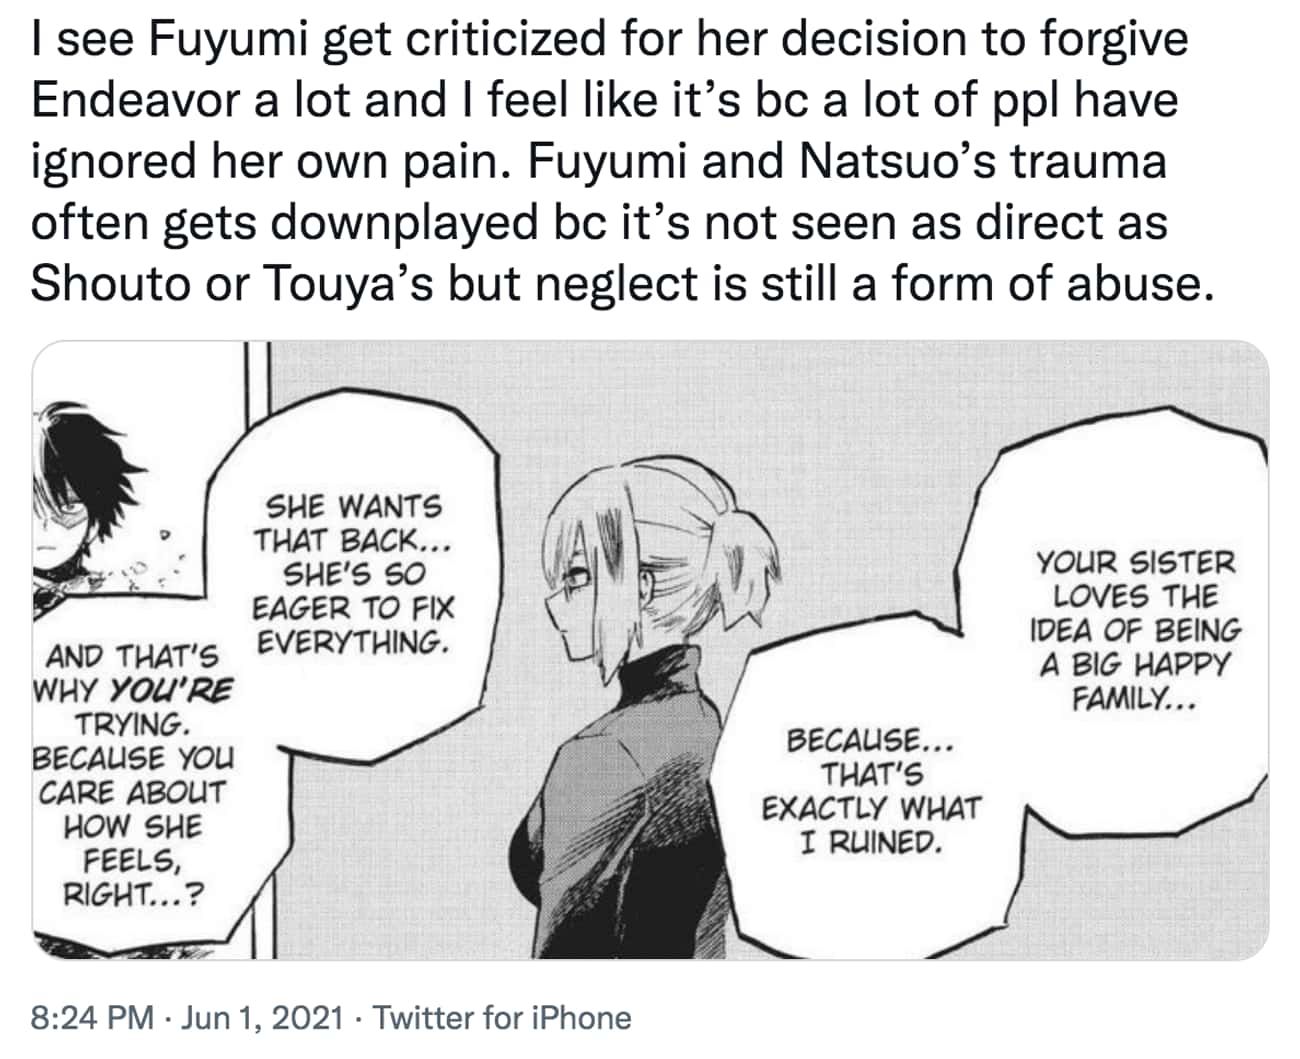 Fuyumi's Neglect